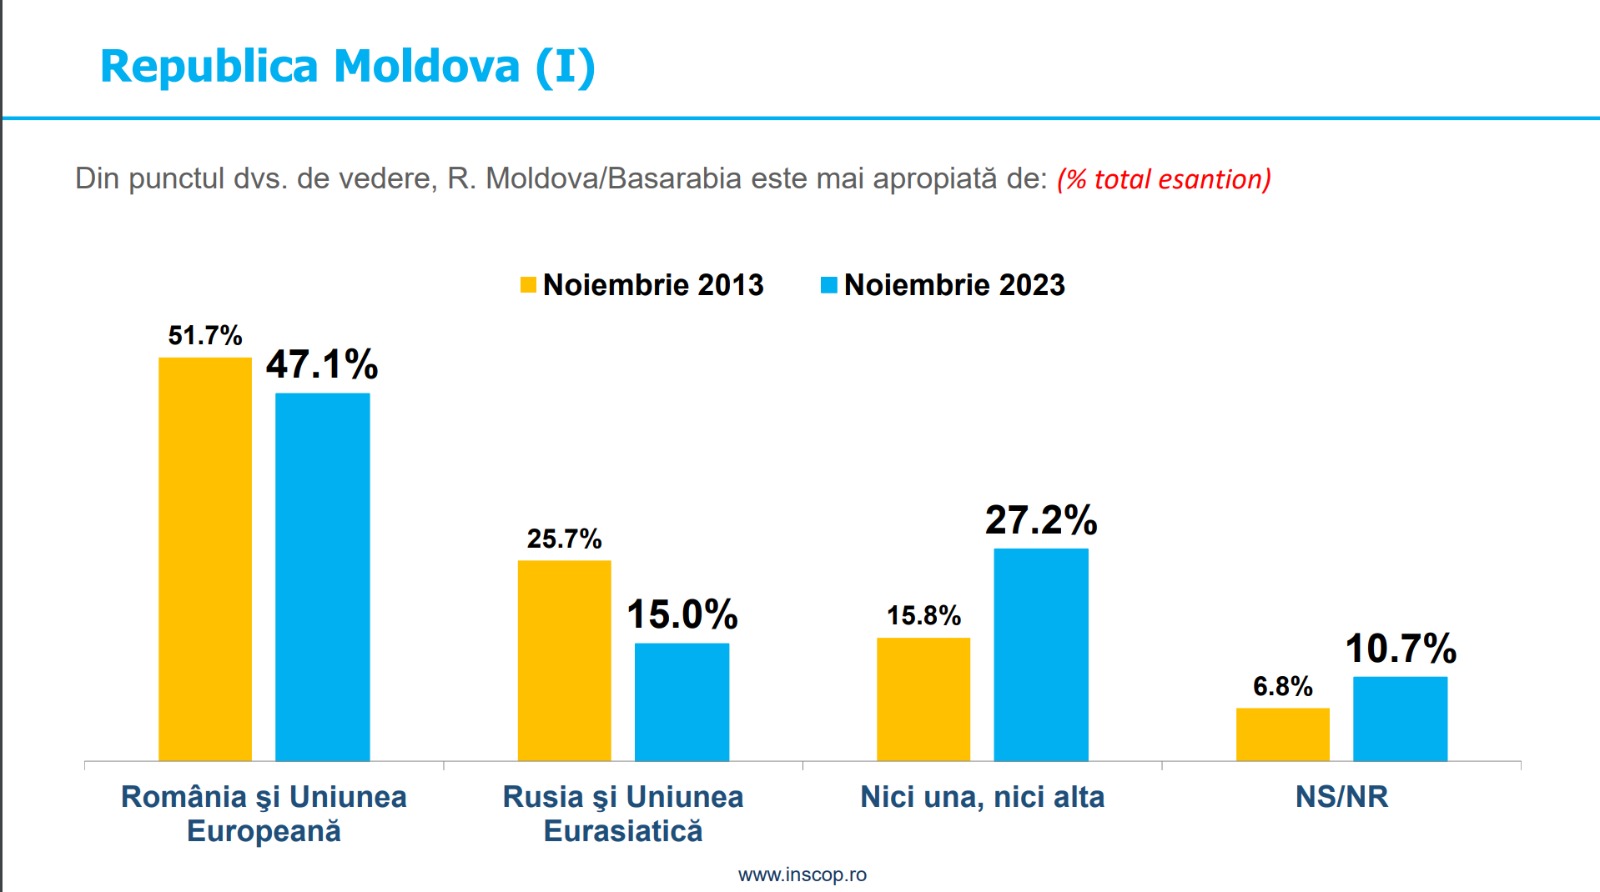 Aproape 50% dintre români cred că R. Moldova este mai apropiată de România şi UE